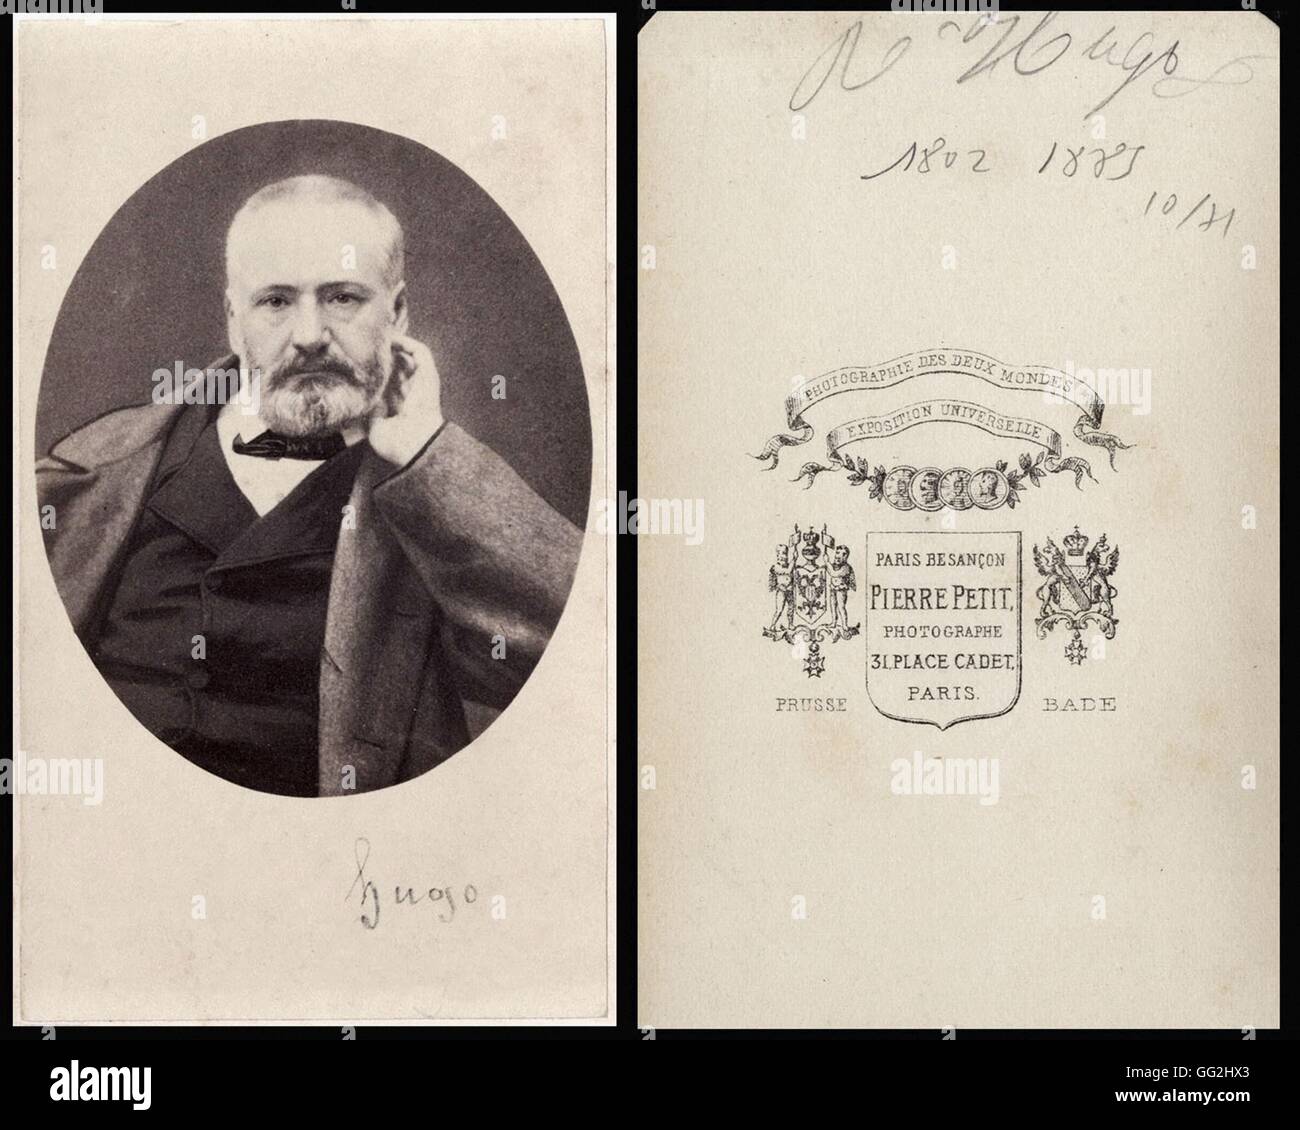 Victor Hugo 1802 15 Poeta Francese E Scrittore Foto Di Pierre Petit Dimensione Biglietto Da Visita Foto Stock Alamy